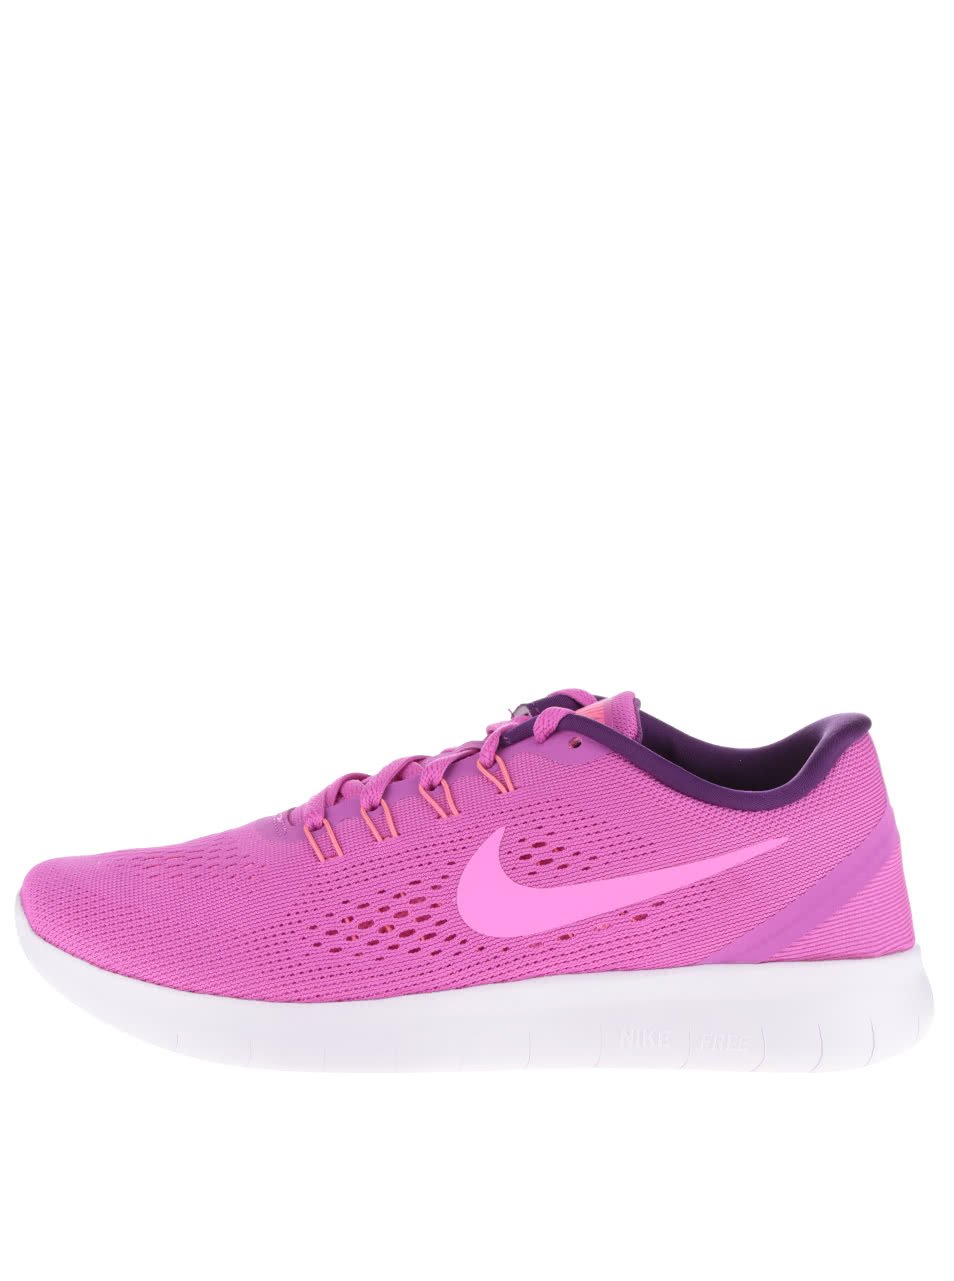 Růžové dámské tenisky Nike Free